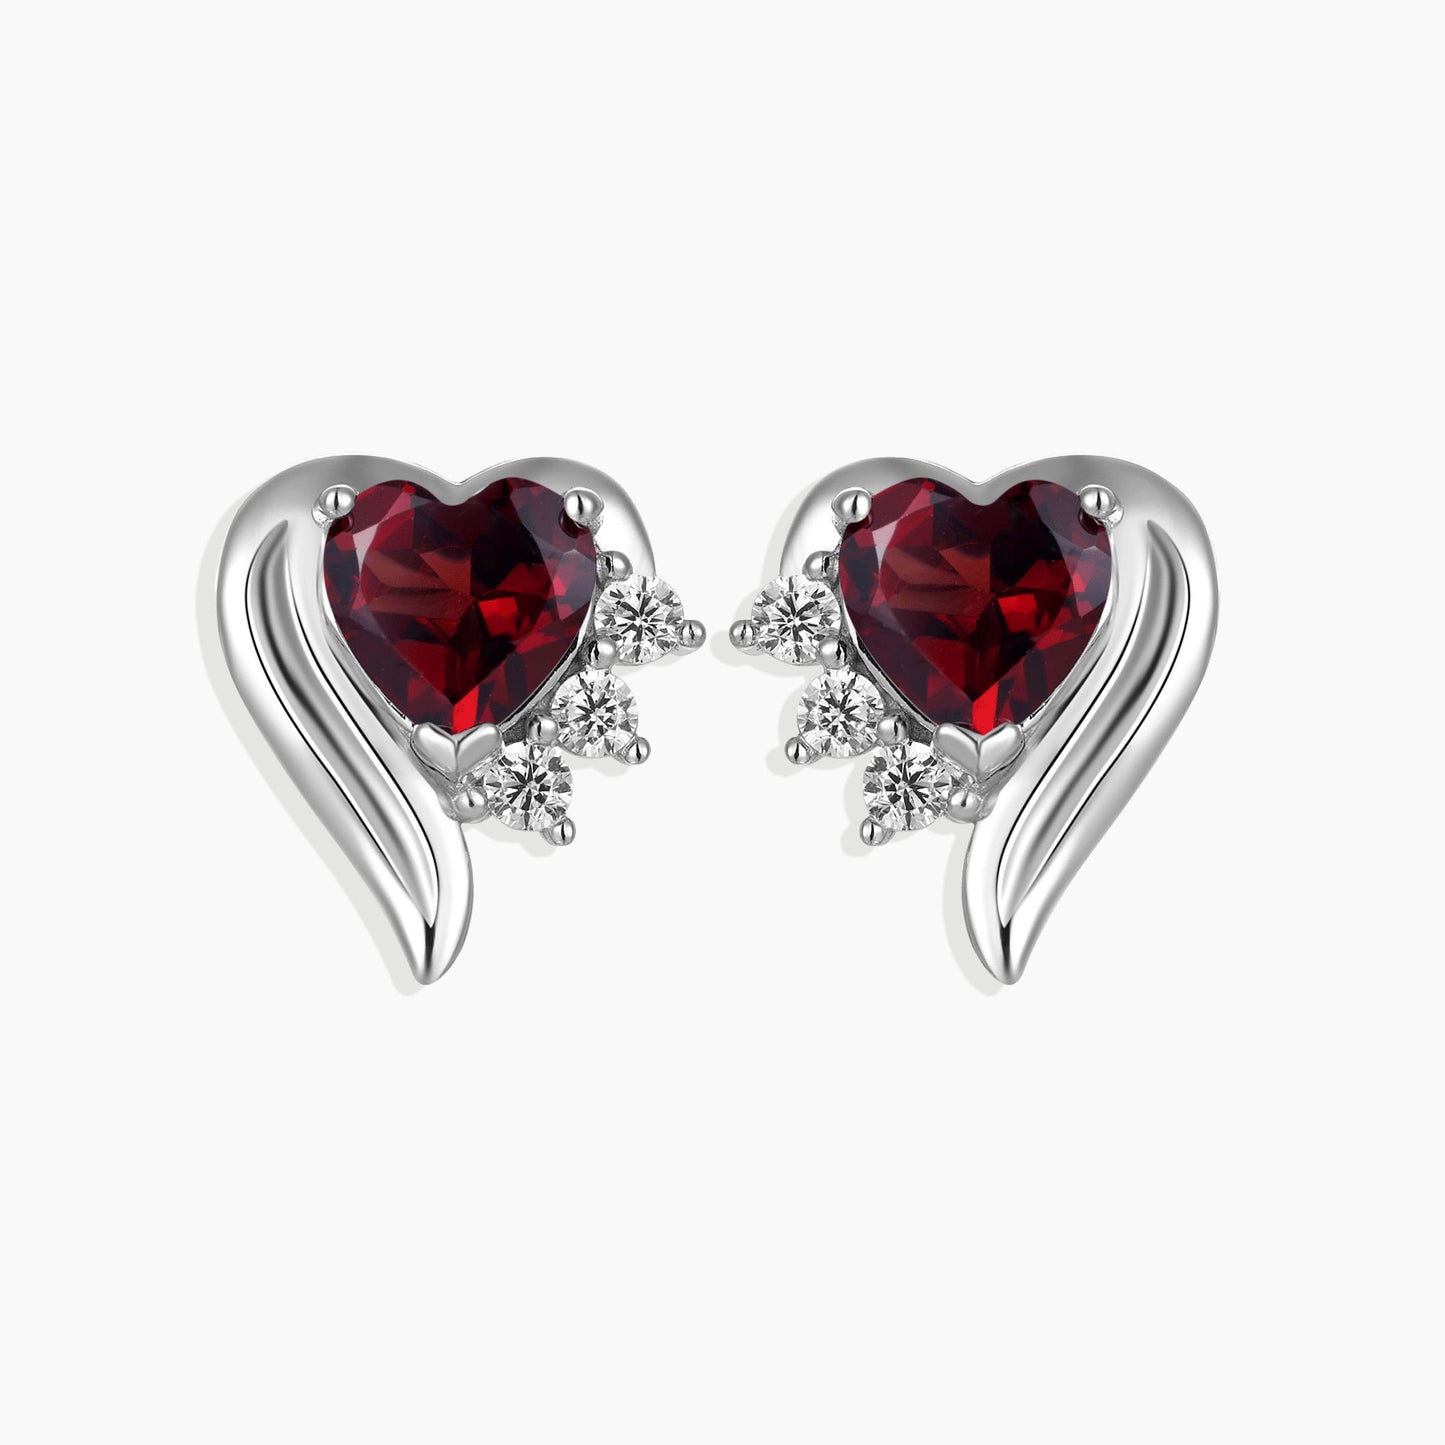 Garnet Heart Shape Stud Earrings in Sterling Silver